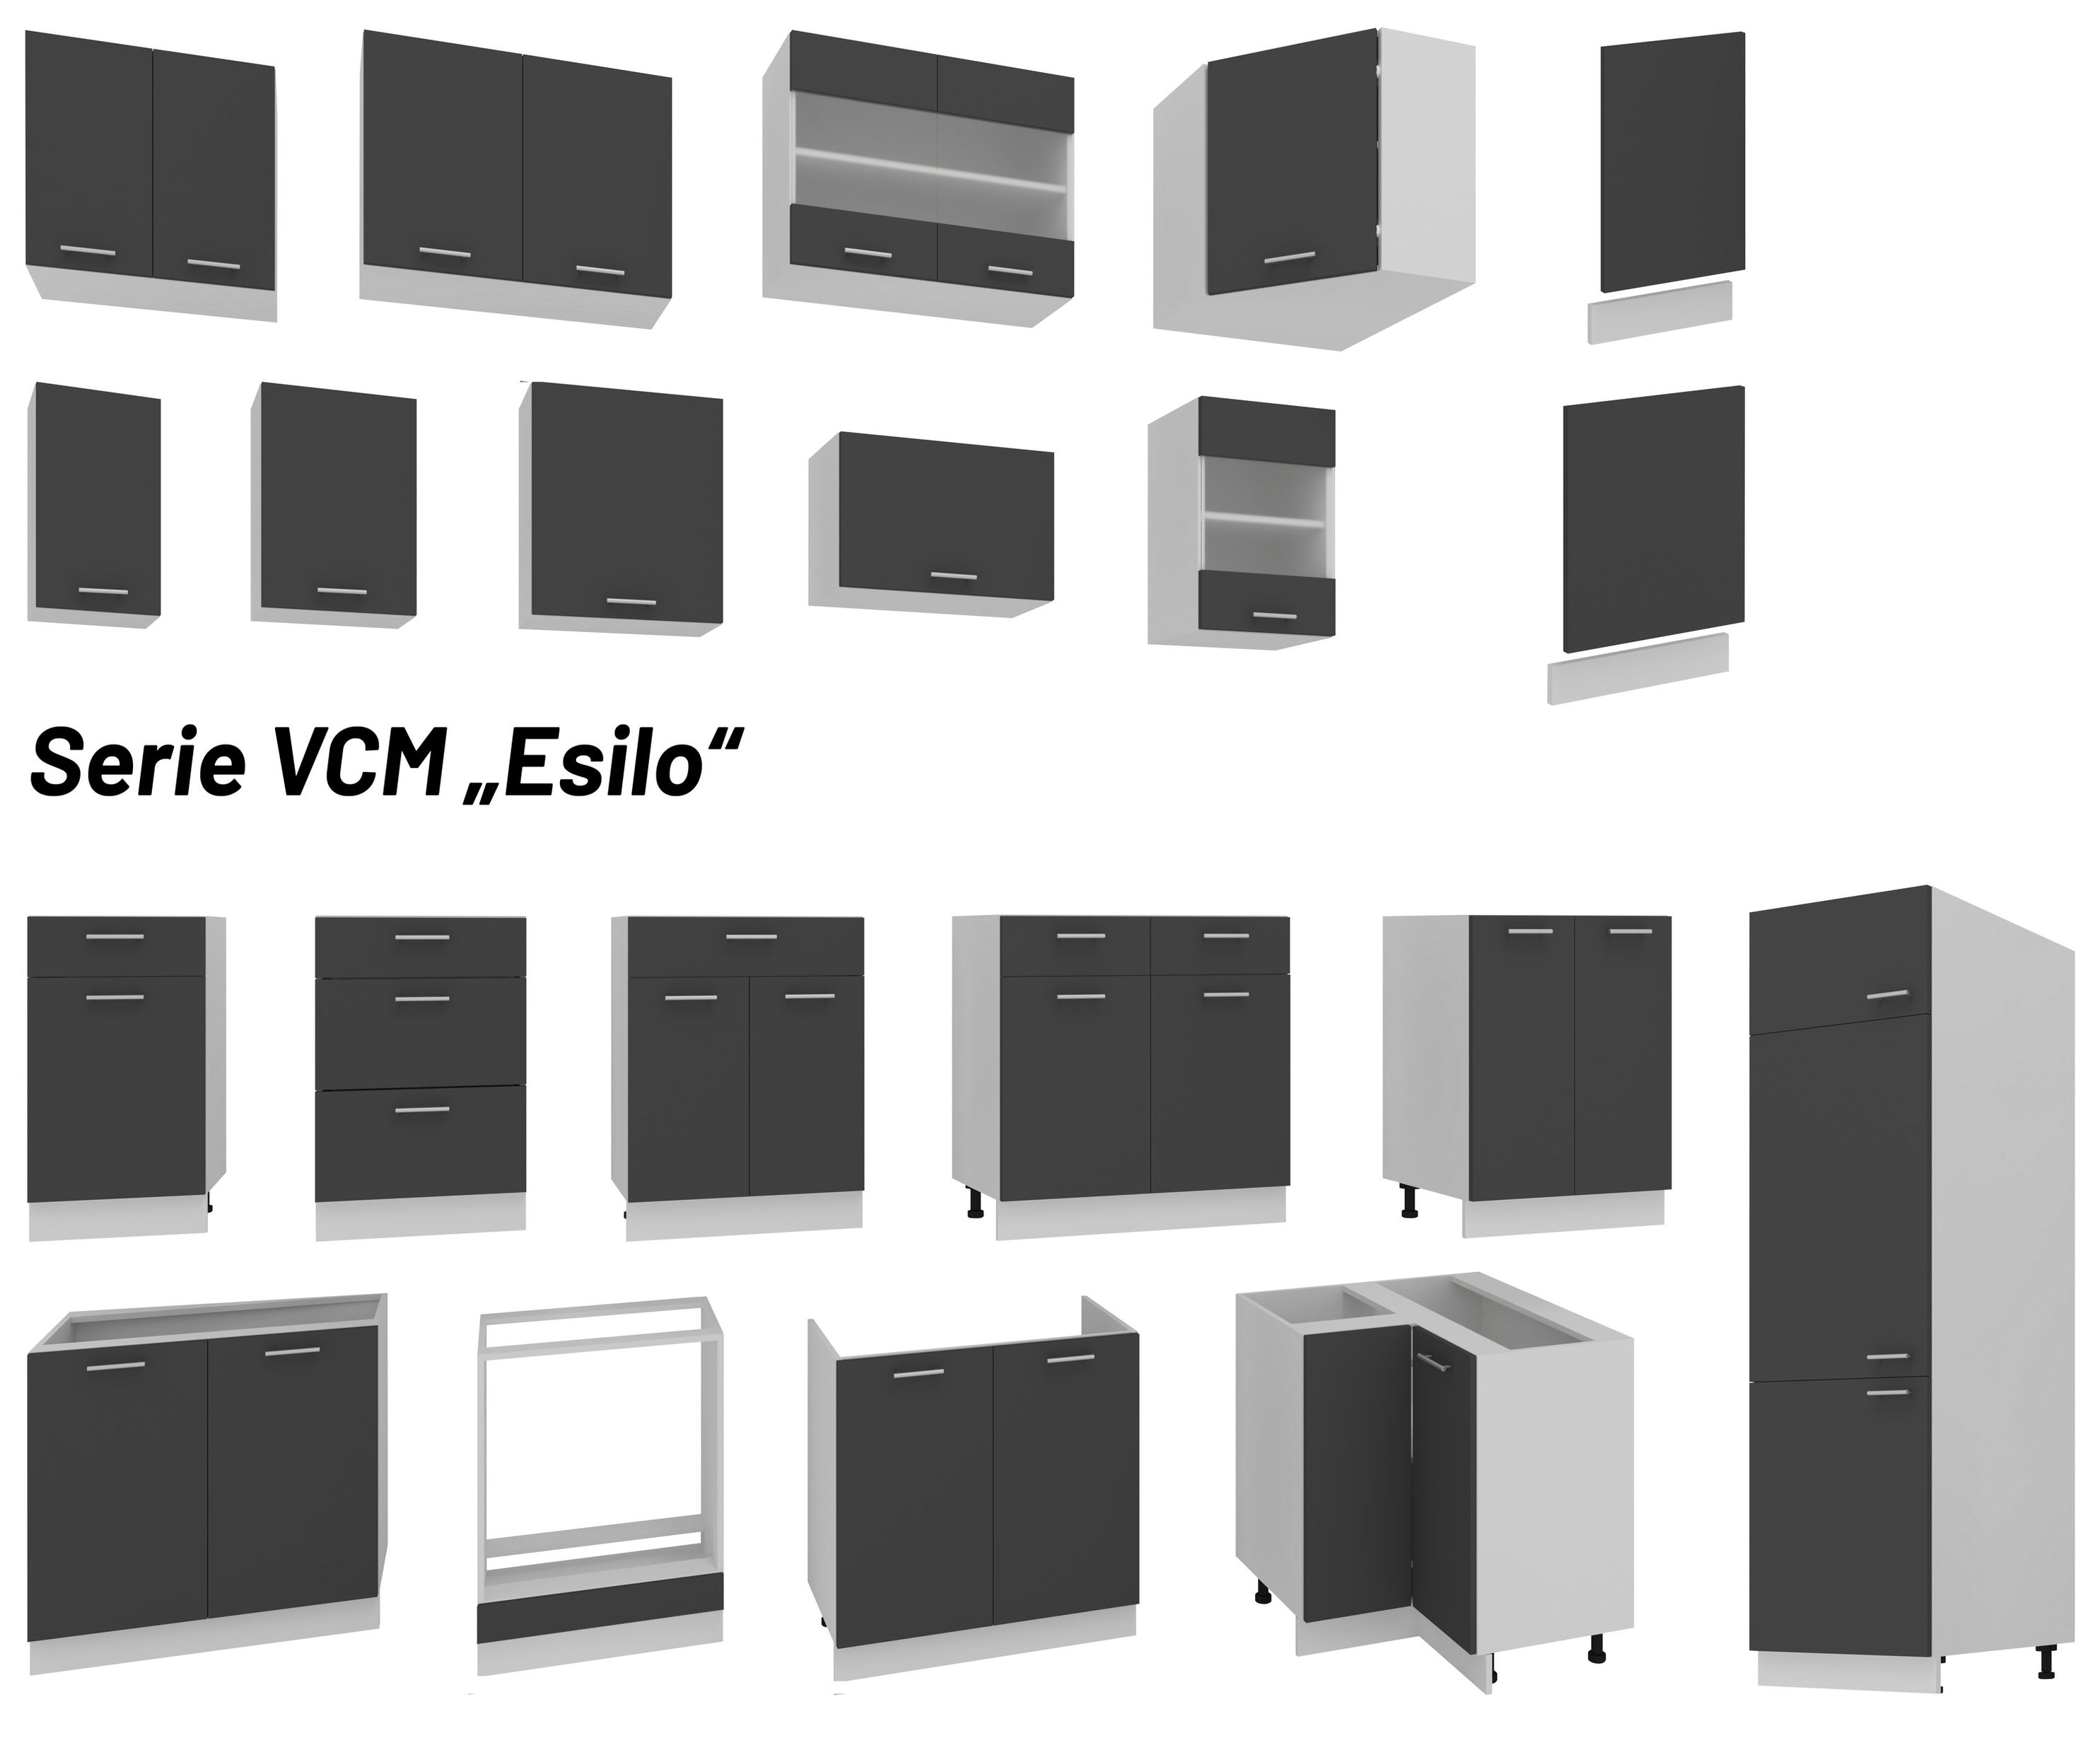 VCM Spülunterschrank Breite 80 cm Spülenschrank Unterschrank Spüle Küche  Esilo Farbe: Weiß Anthrazit